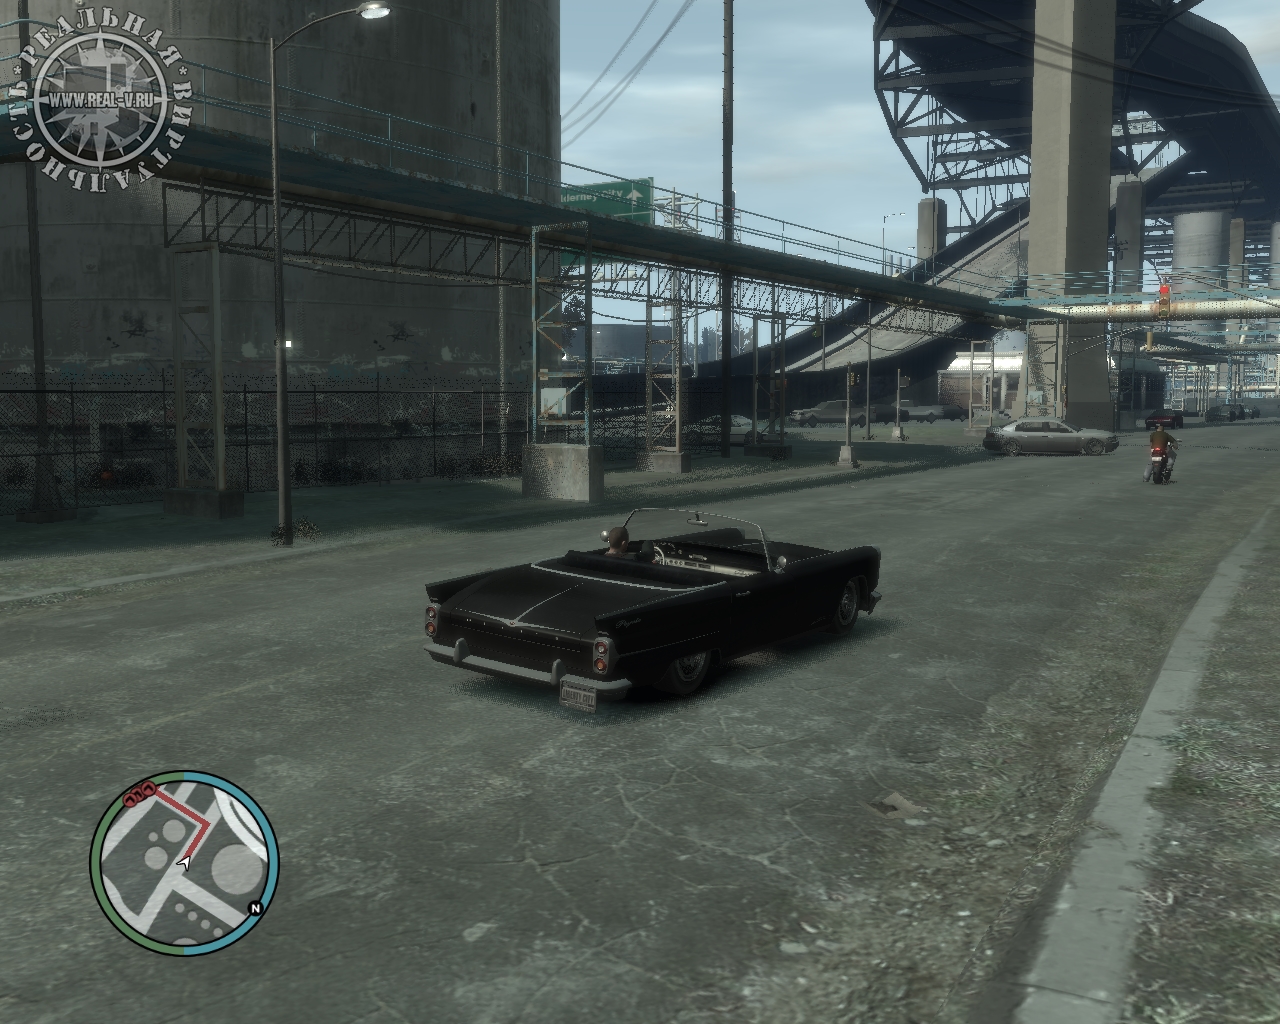 Требования игры гта. Grand Theft auto IV системные требования. Системные требования игры ГТА 4. Игры GTA 4 системные требования. GTA IV - Grand Theft auto системные требования.